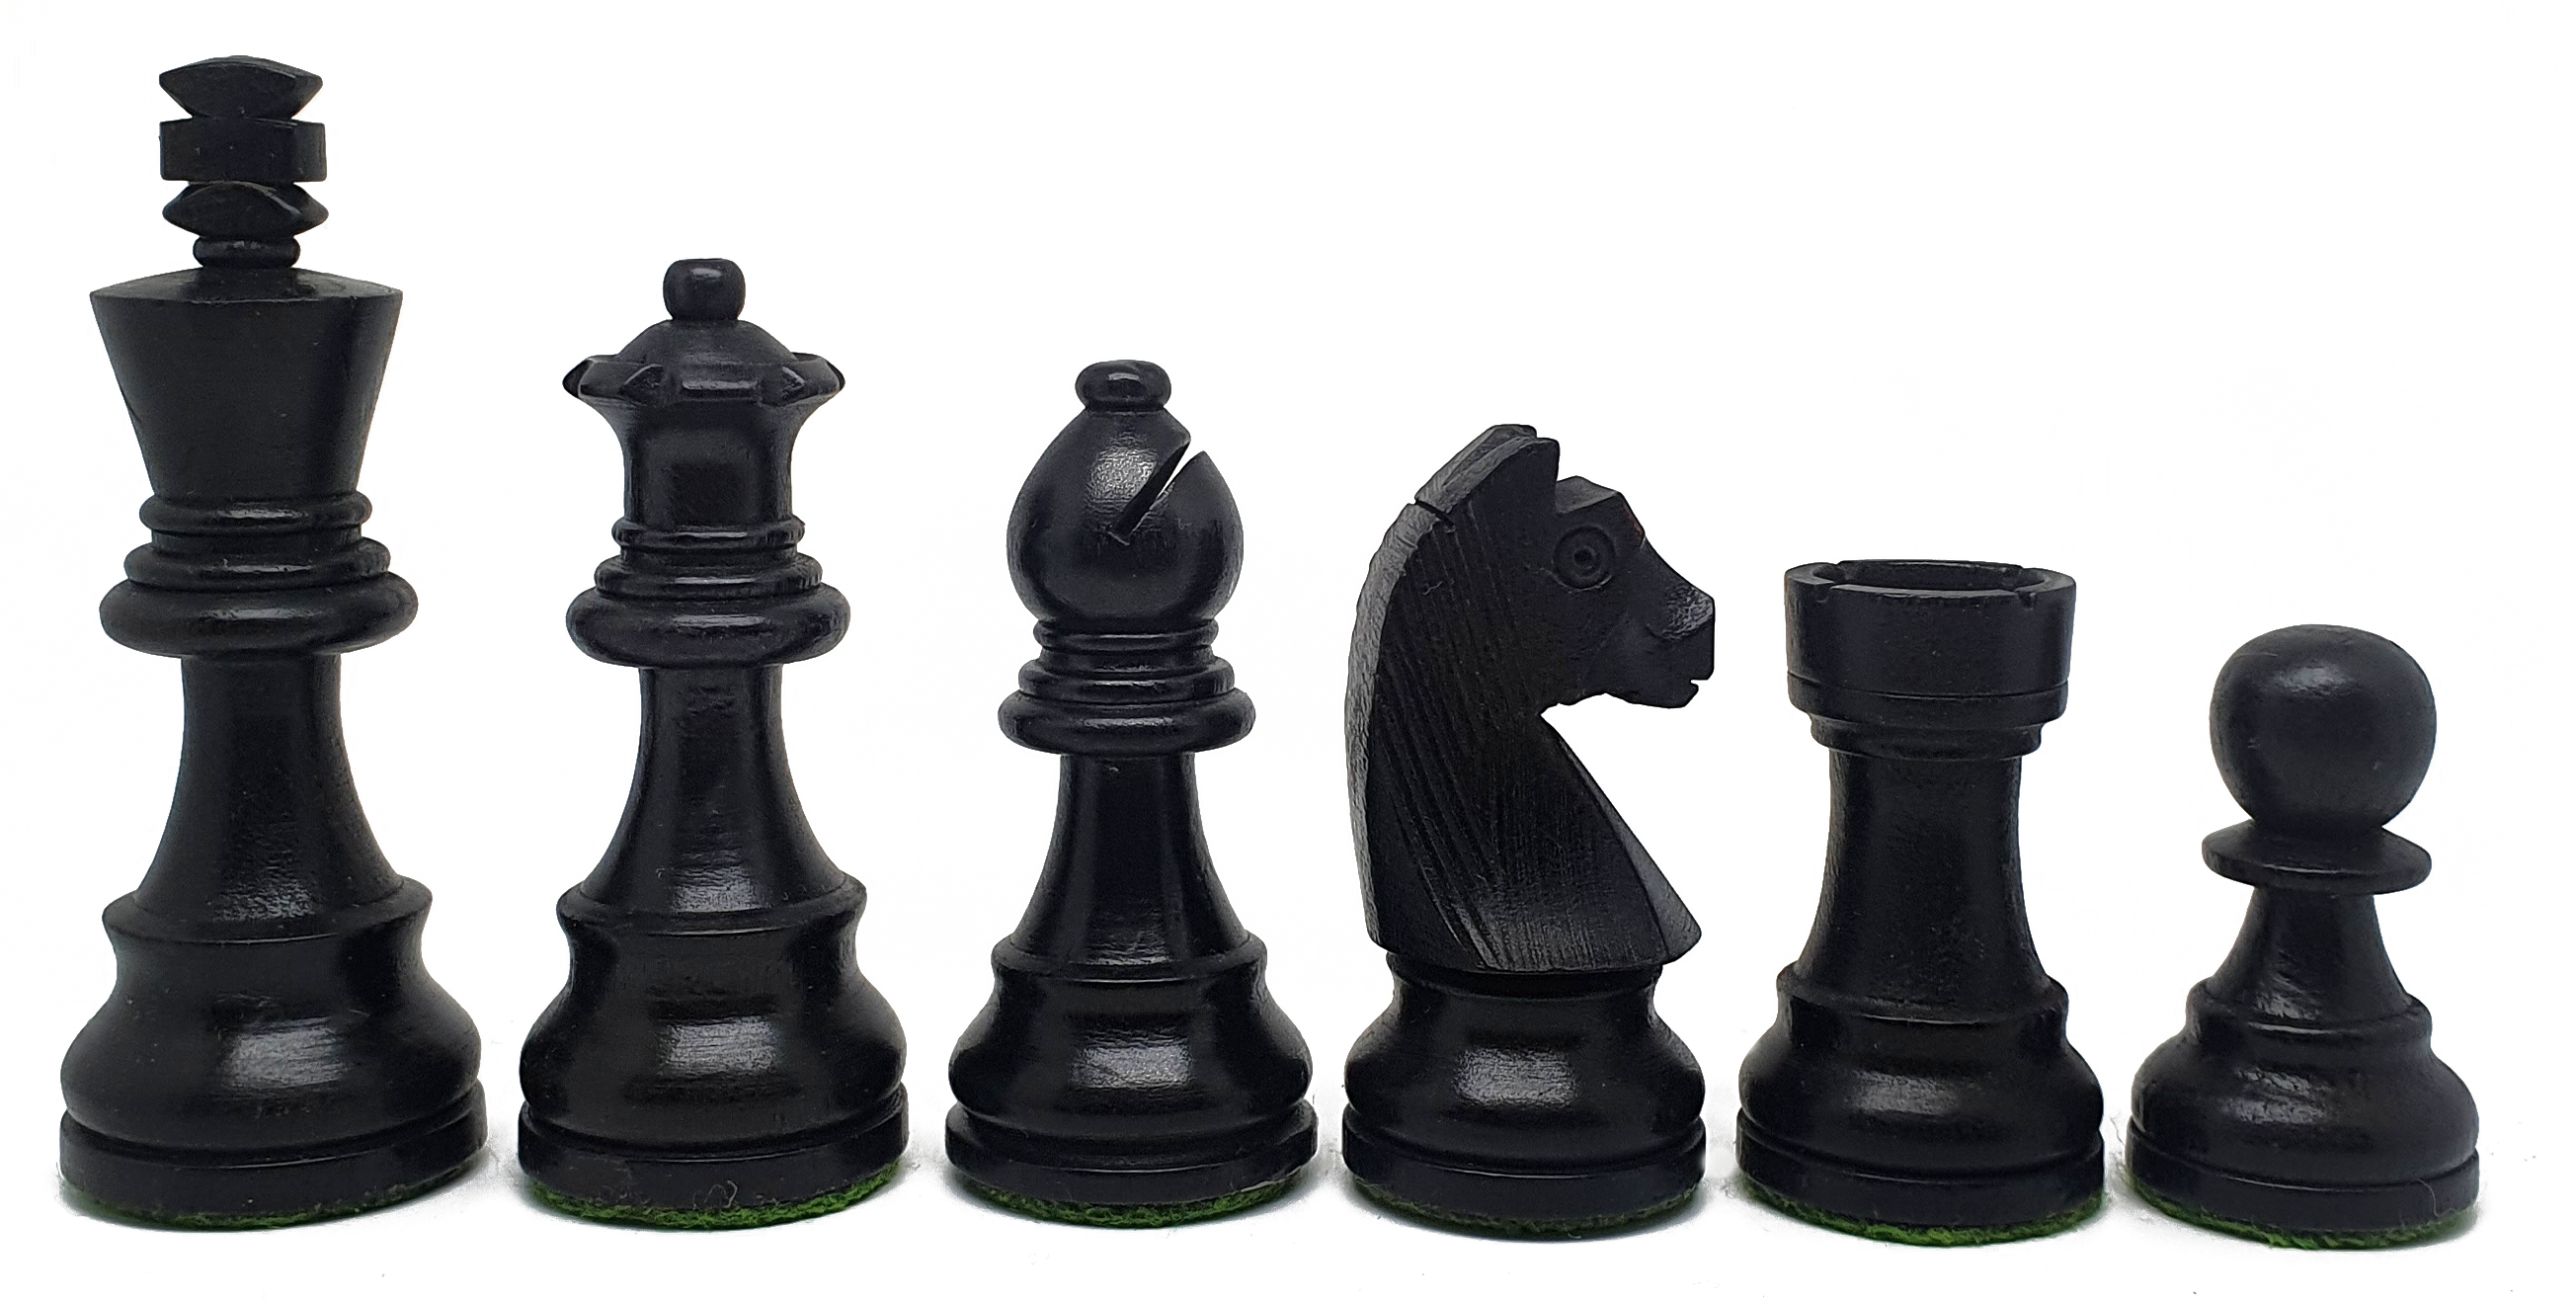 VI/ Piezas de ajedrez modelo Alemán "3,75" Ebanizado.